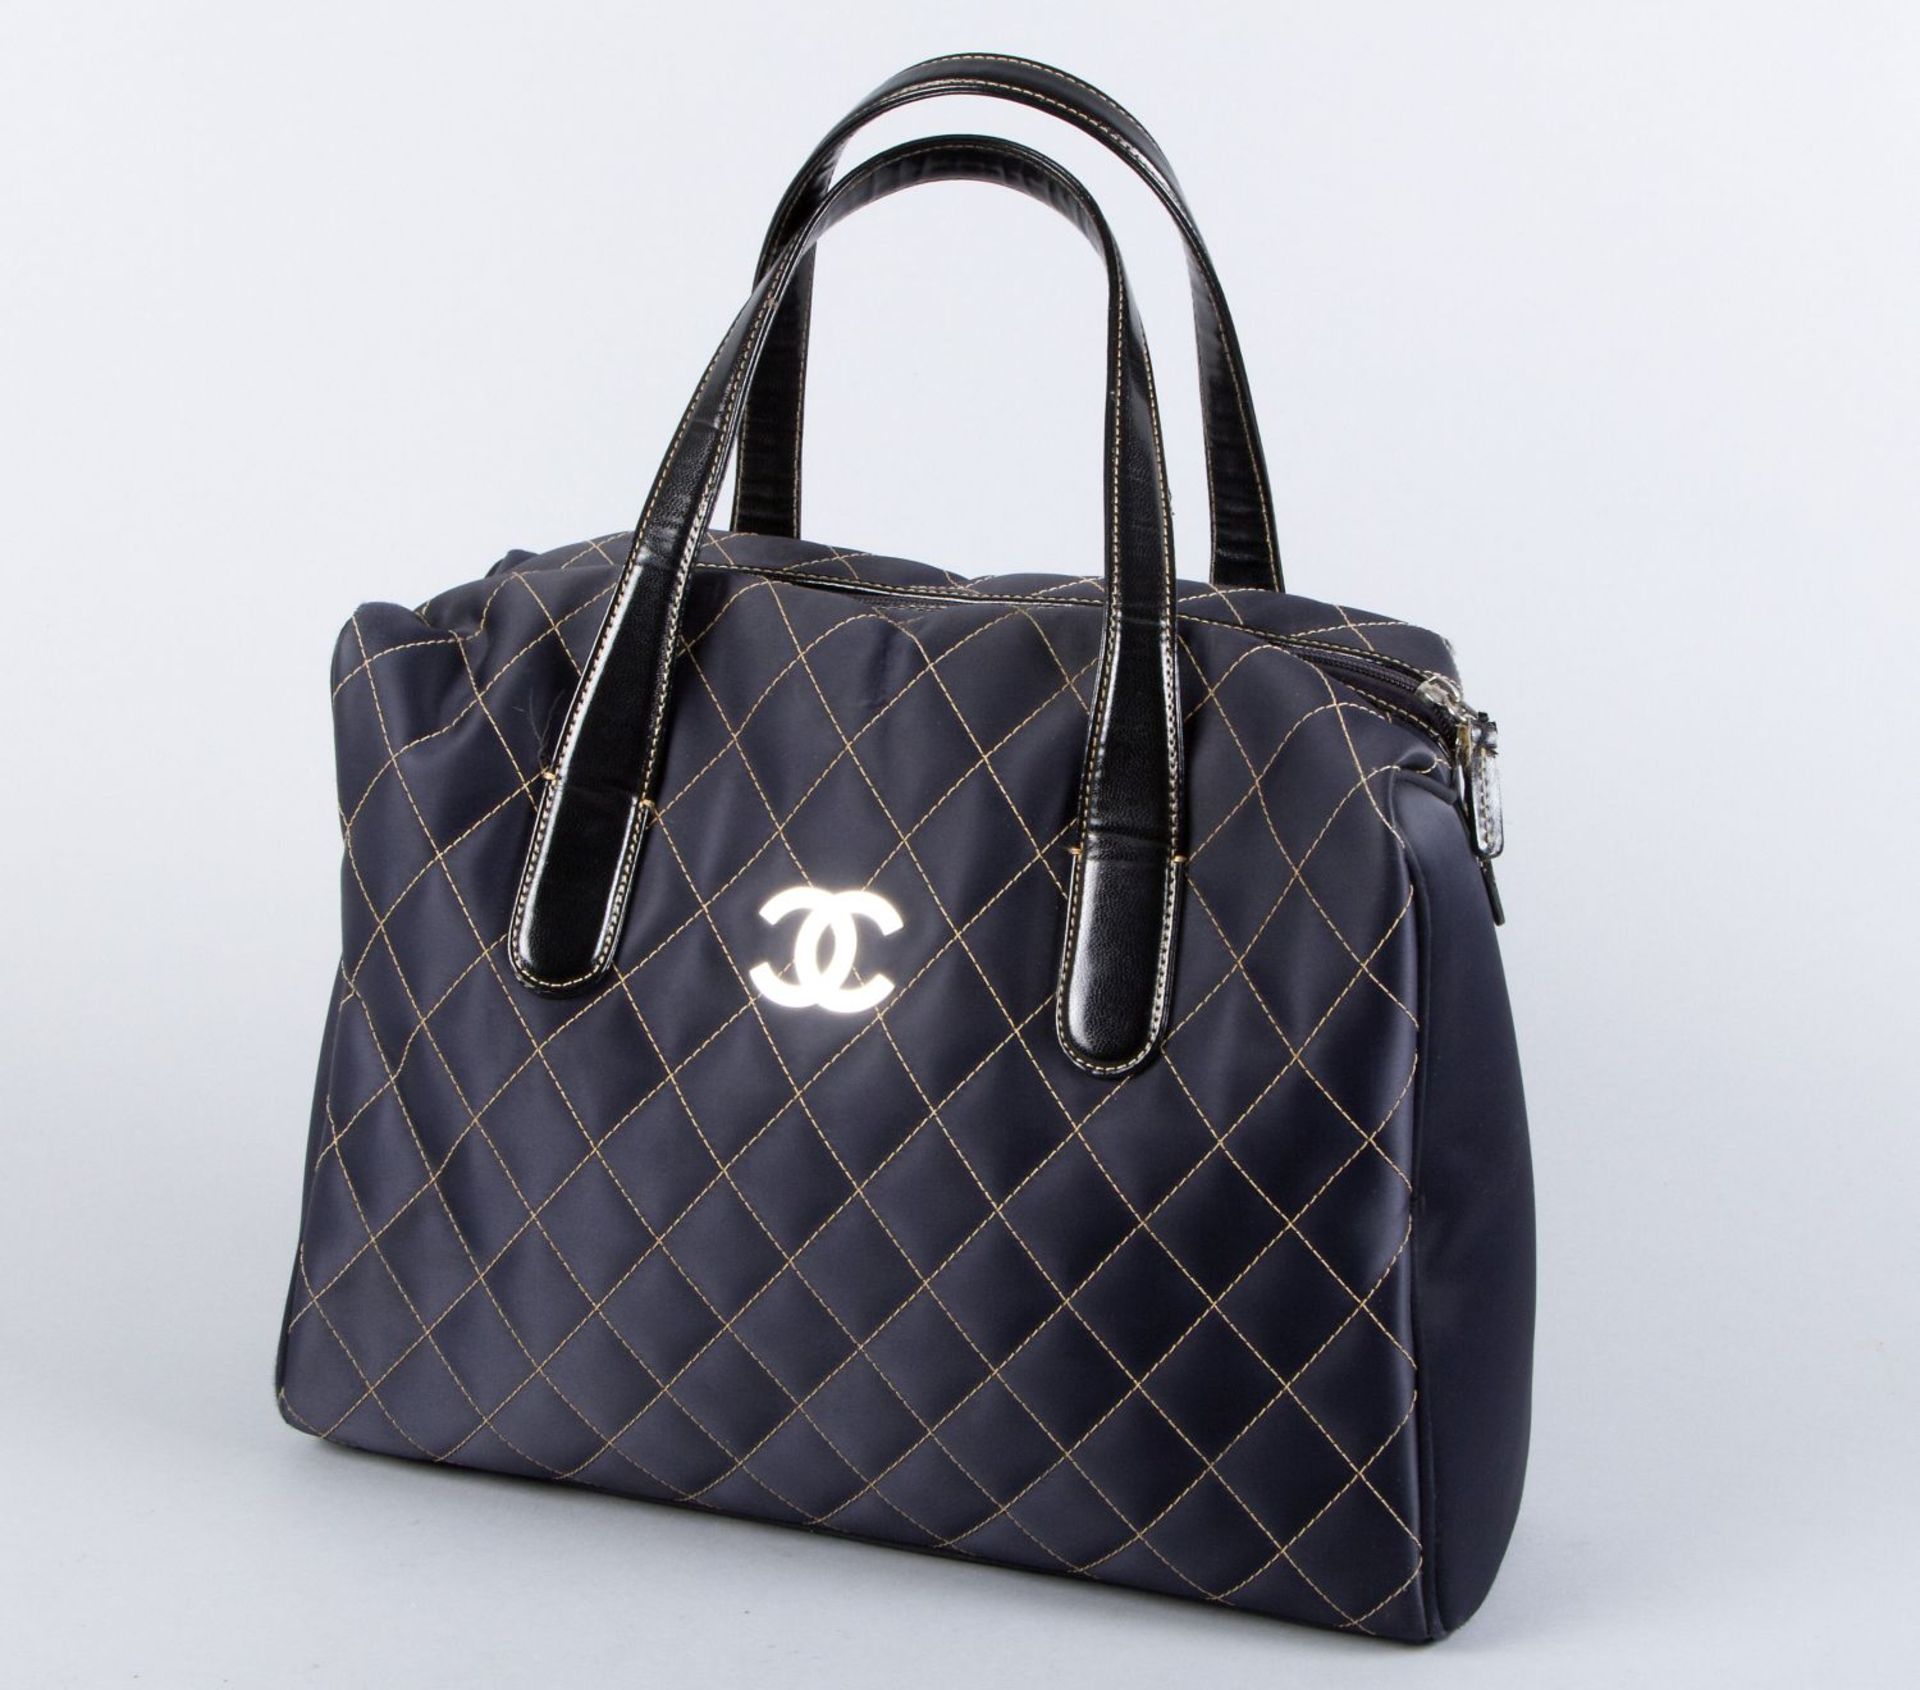 Vintage-Chanel-HandtascheDunkelblaues Nylon mit gesteppten beigen Nähten, beiges Innenfutter mit